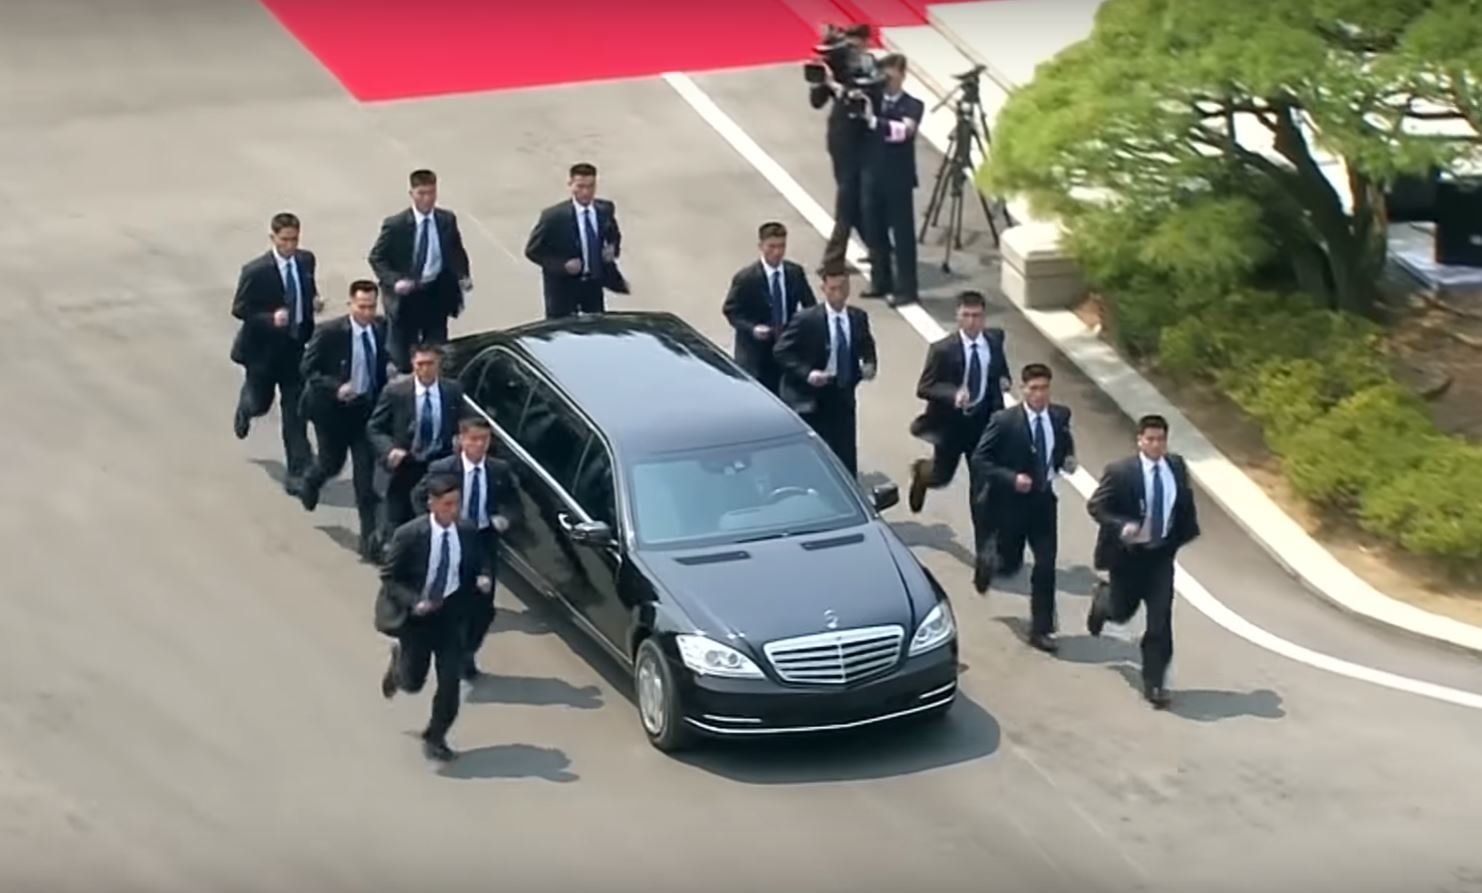 Kim Čong-Un a jeho speciální kolona. Limuzínu s diktátorem obklopují běžící bodyguardi